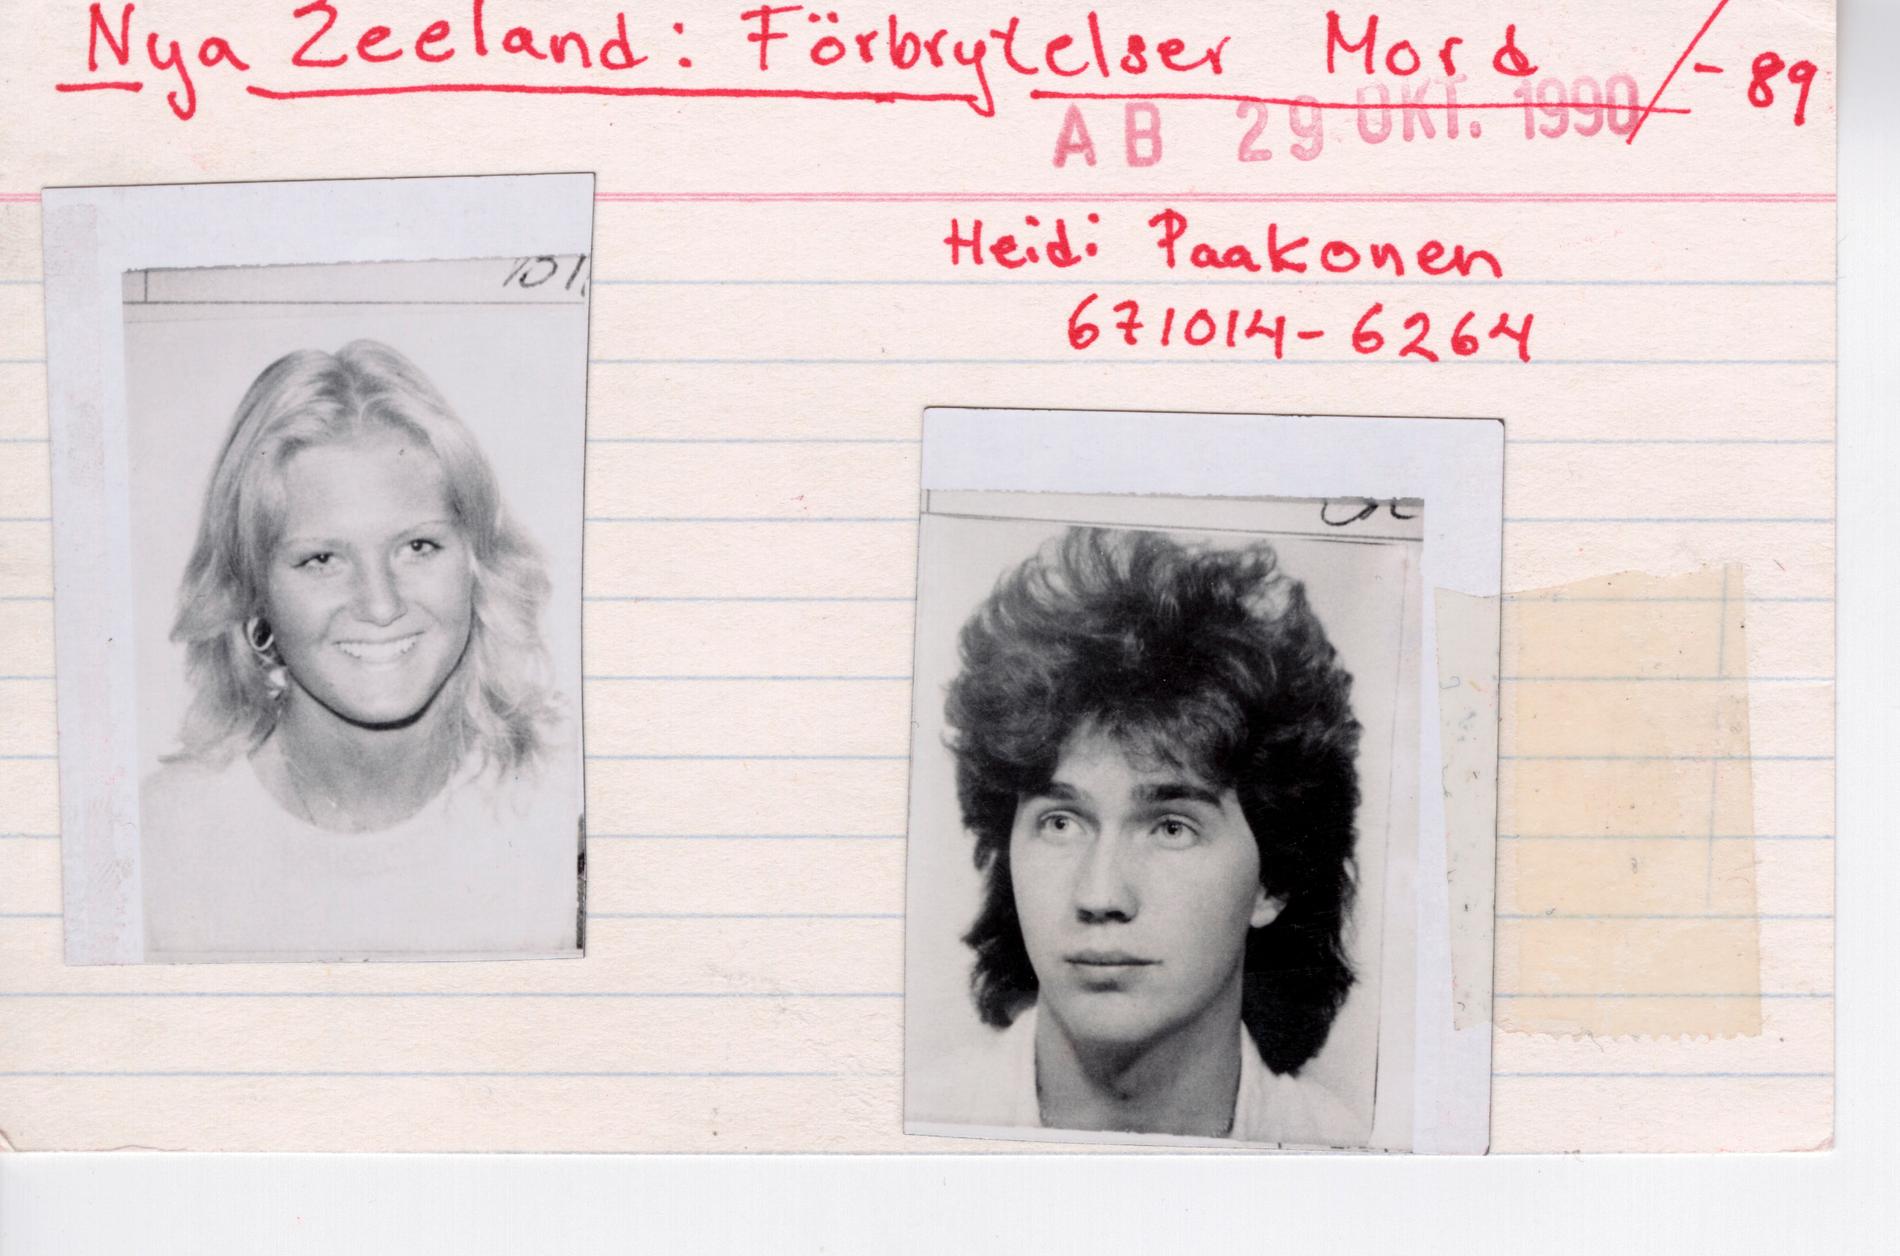 Urban Höglin och Heidi Paakkonen försvann på Nya Zeeland. Urban hittades död. Heidi har aldrig återfunnits. 